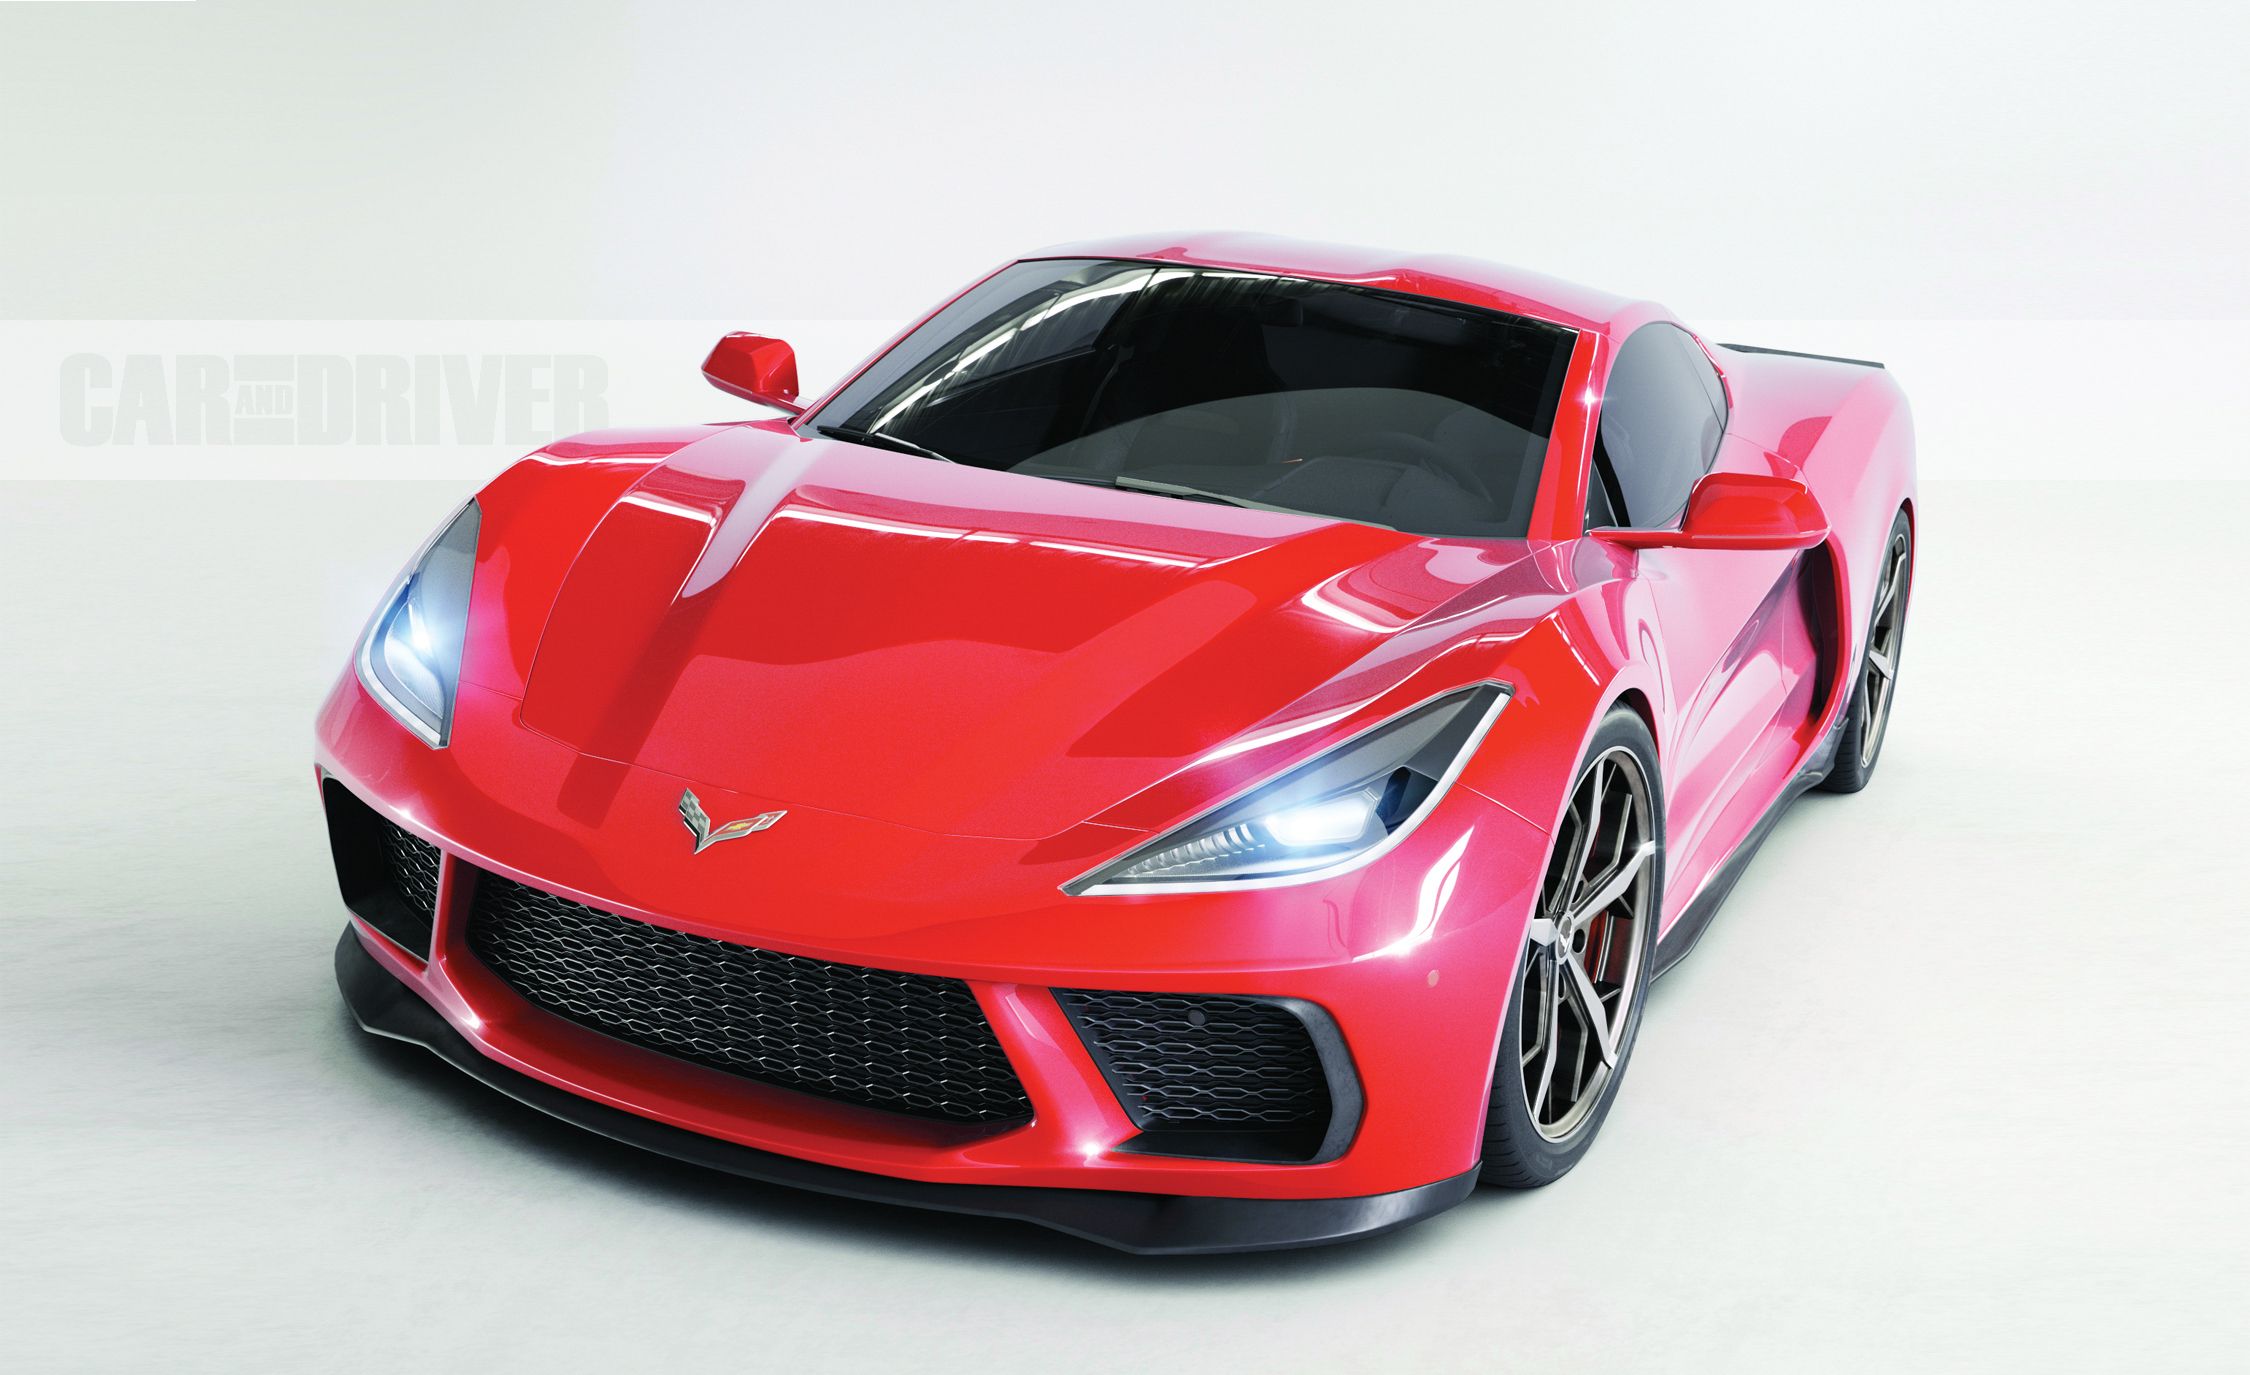 2020-chevrolet-corvette-c8-artists-rendering-25-cars-worth-waiting-for-304-1527106175.jpg